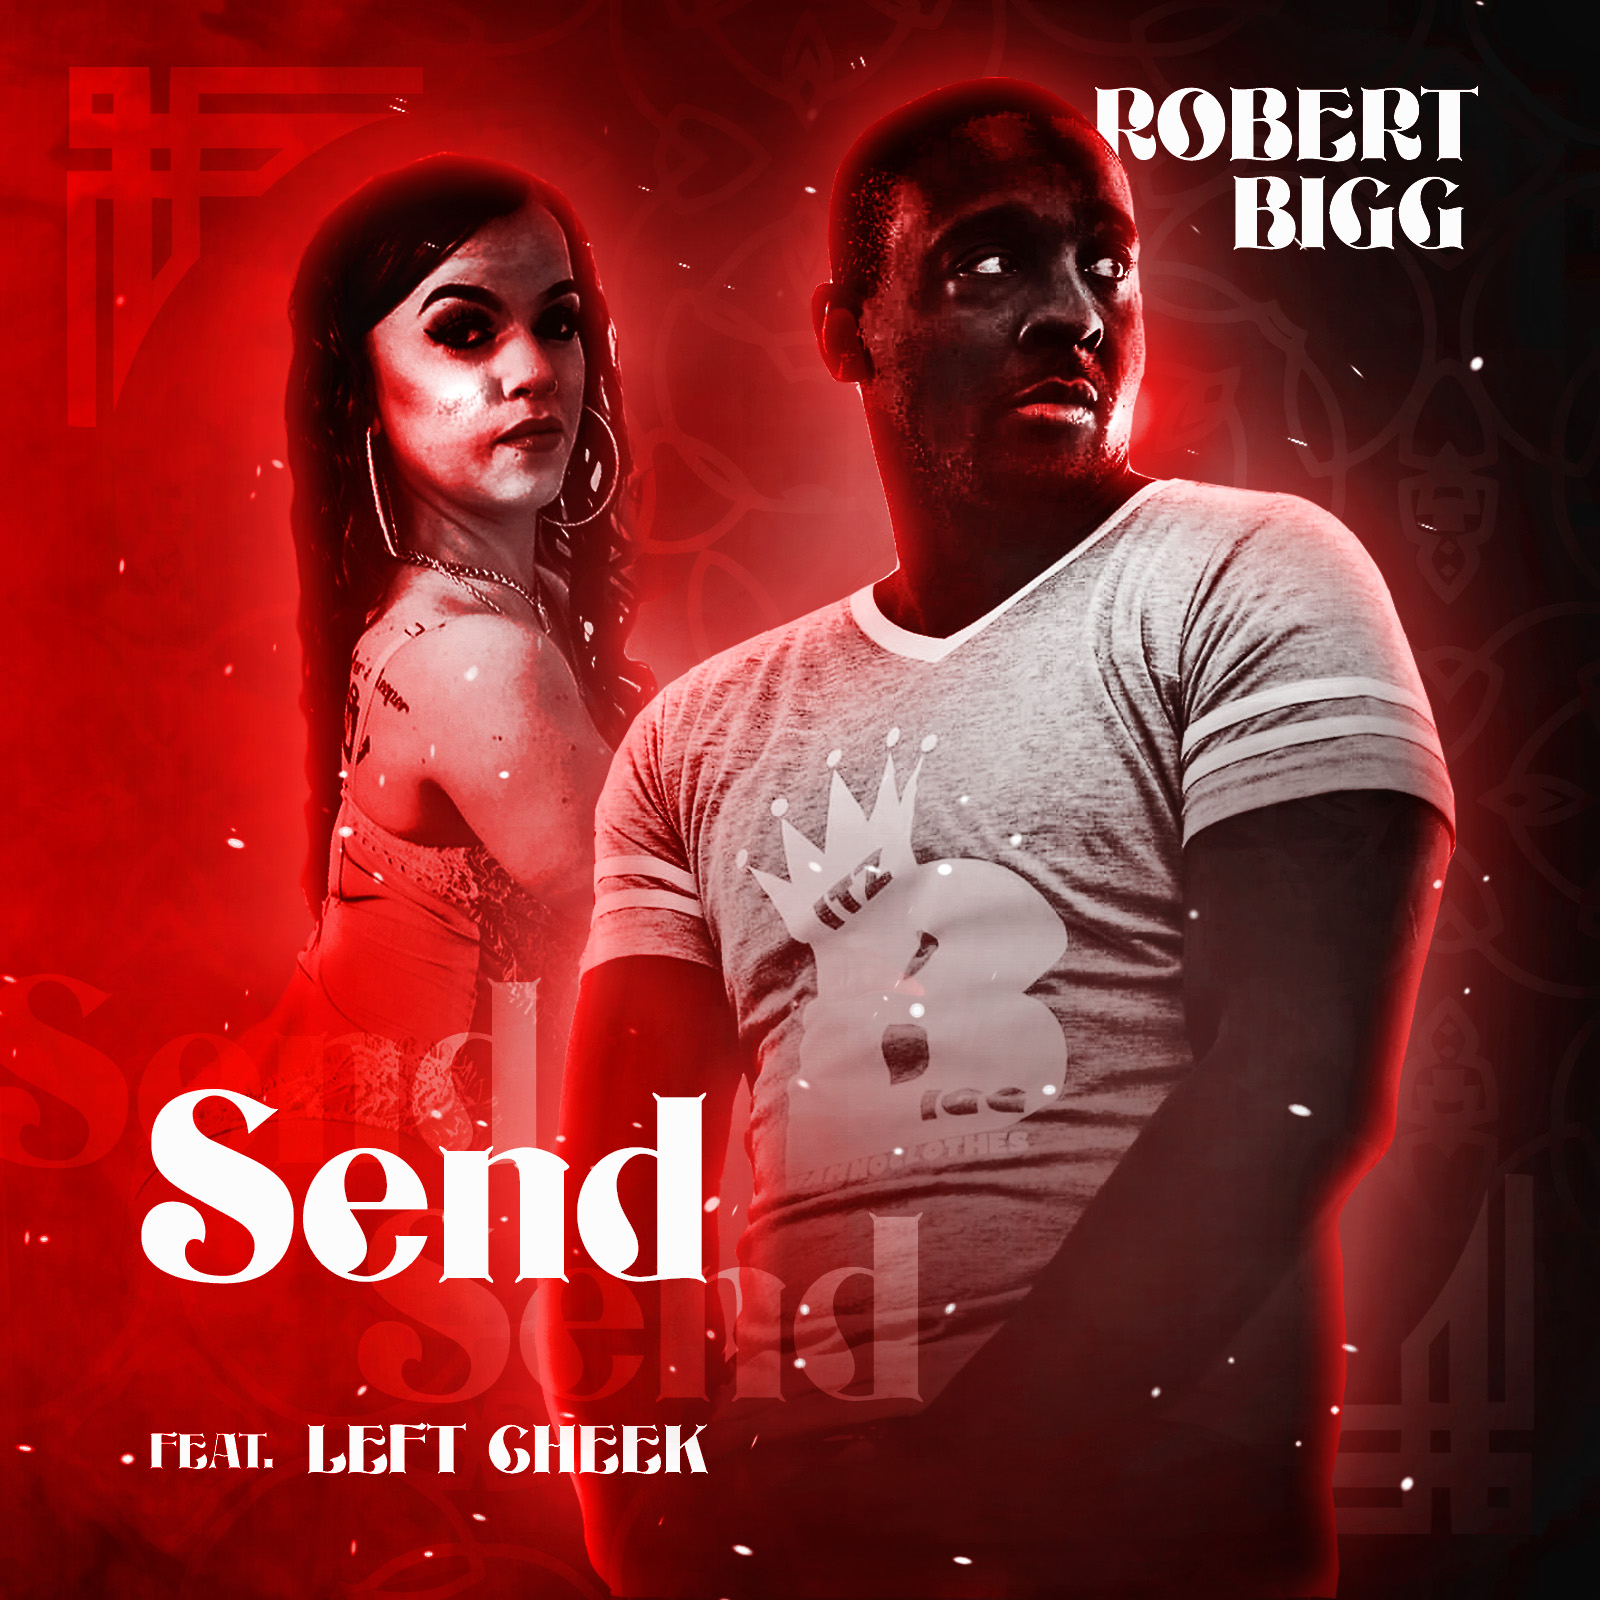 [New Music] Robert Bigg ft Left Cheek – Send